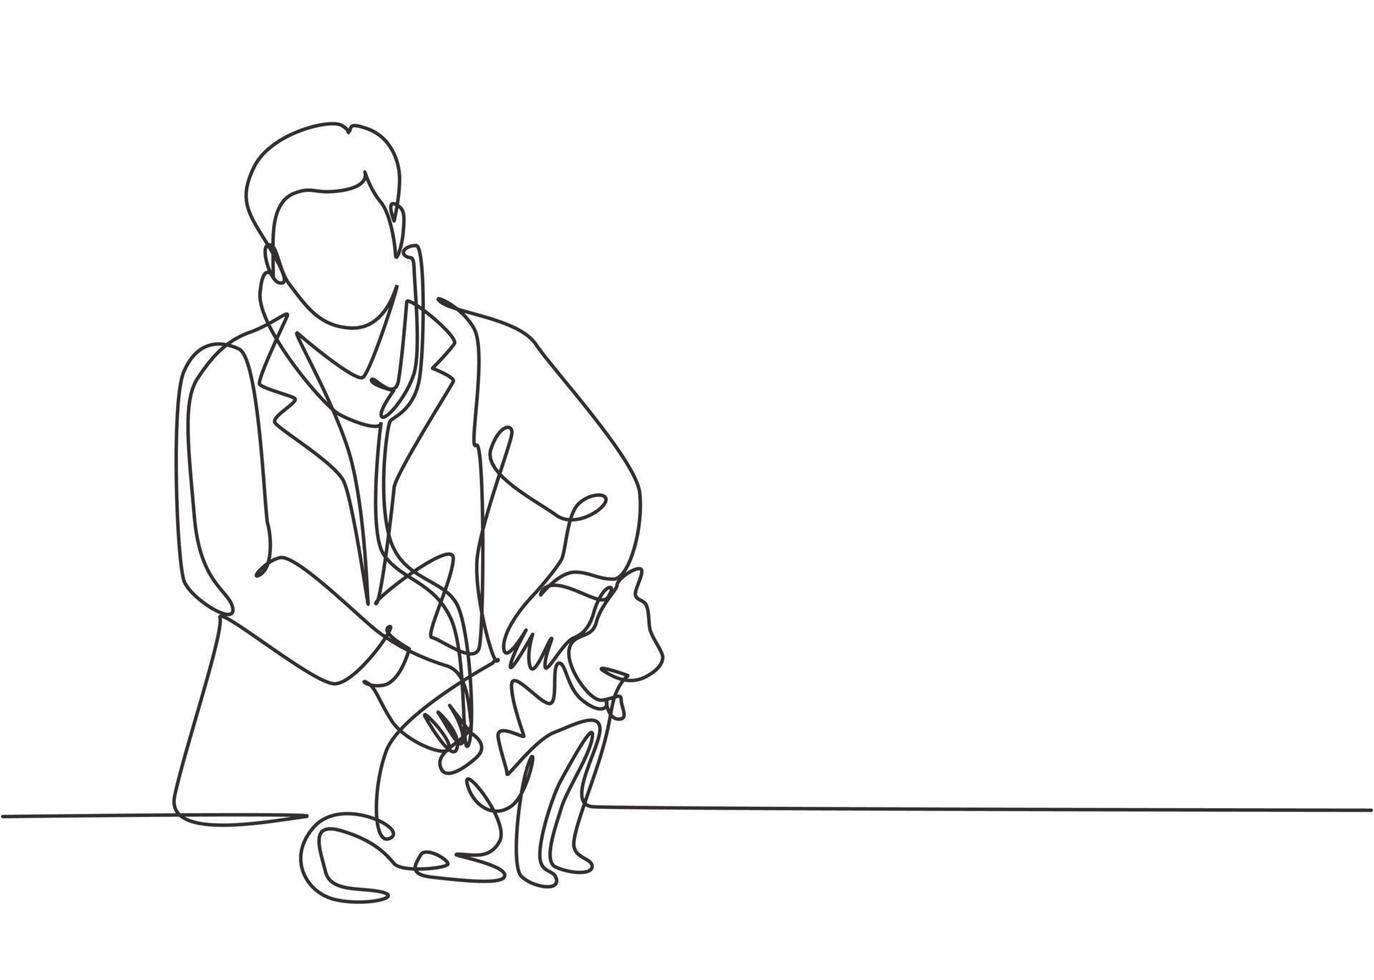 dibujo de una sola línea continua de un veterinario masculino joven que examina y cuida a un gato enfermo debido a una bacteria. Concepto de servicio de atención médica para mascotas ilustración de vector de diseño de dibujo de una línea